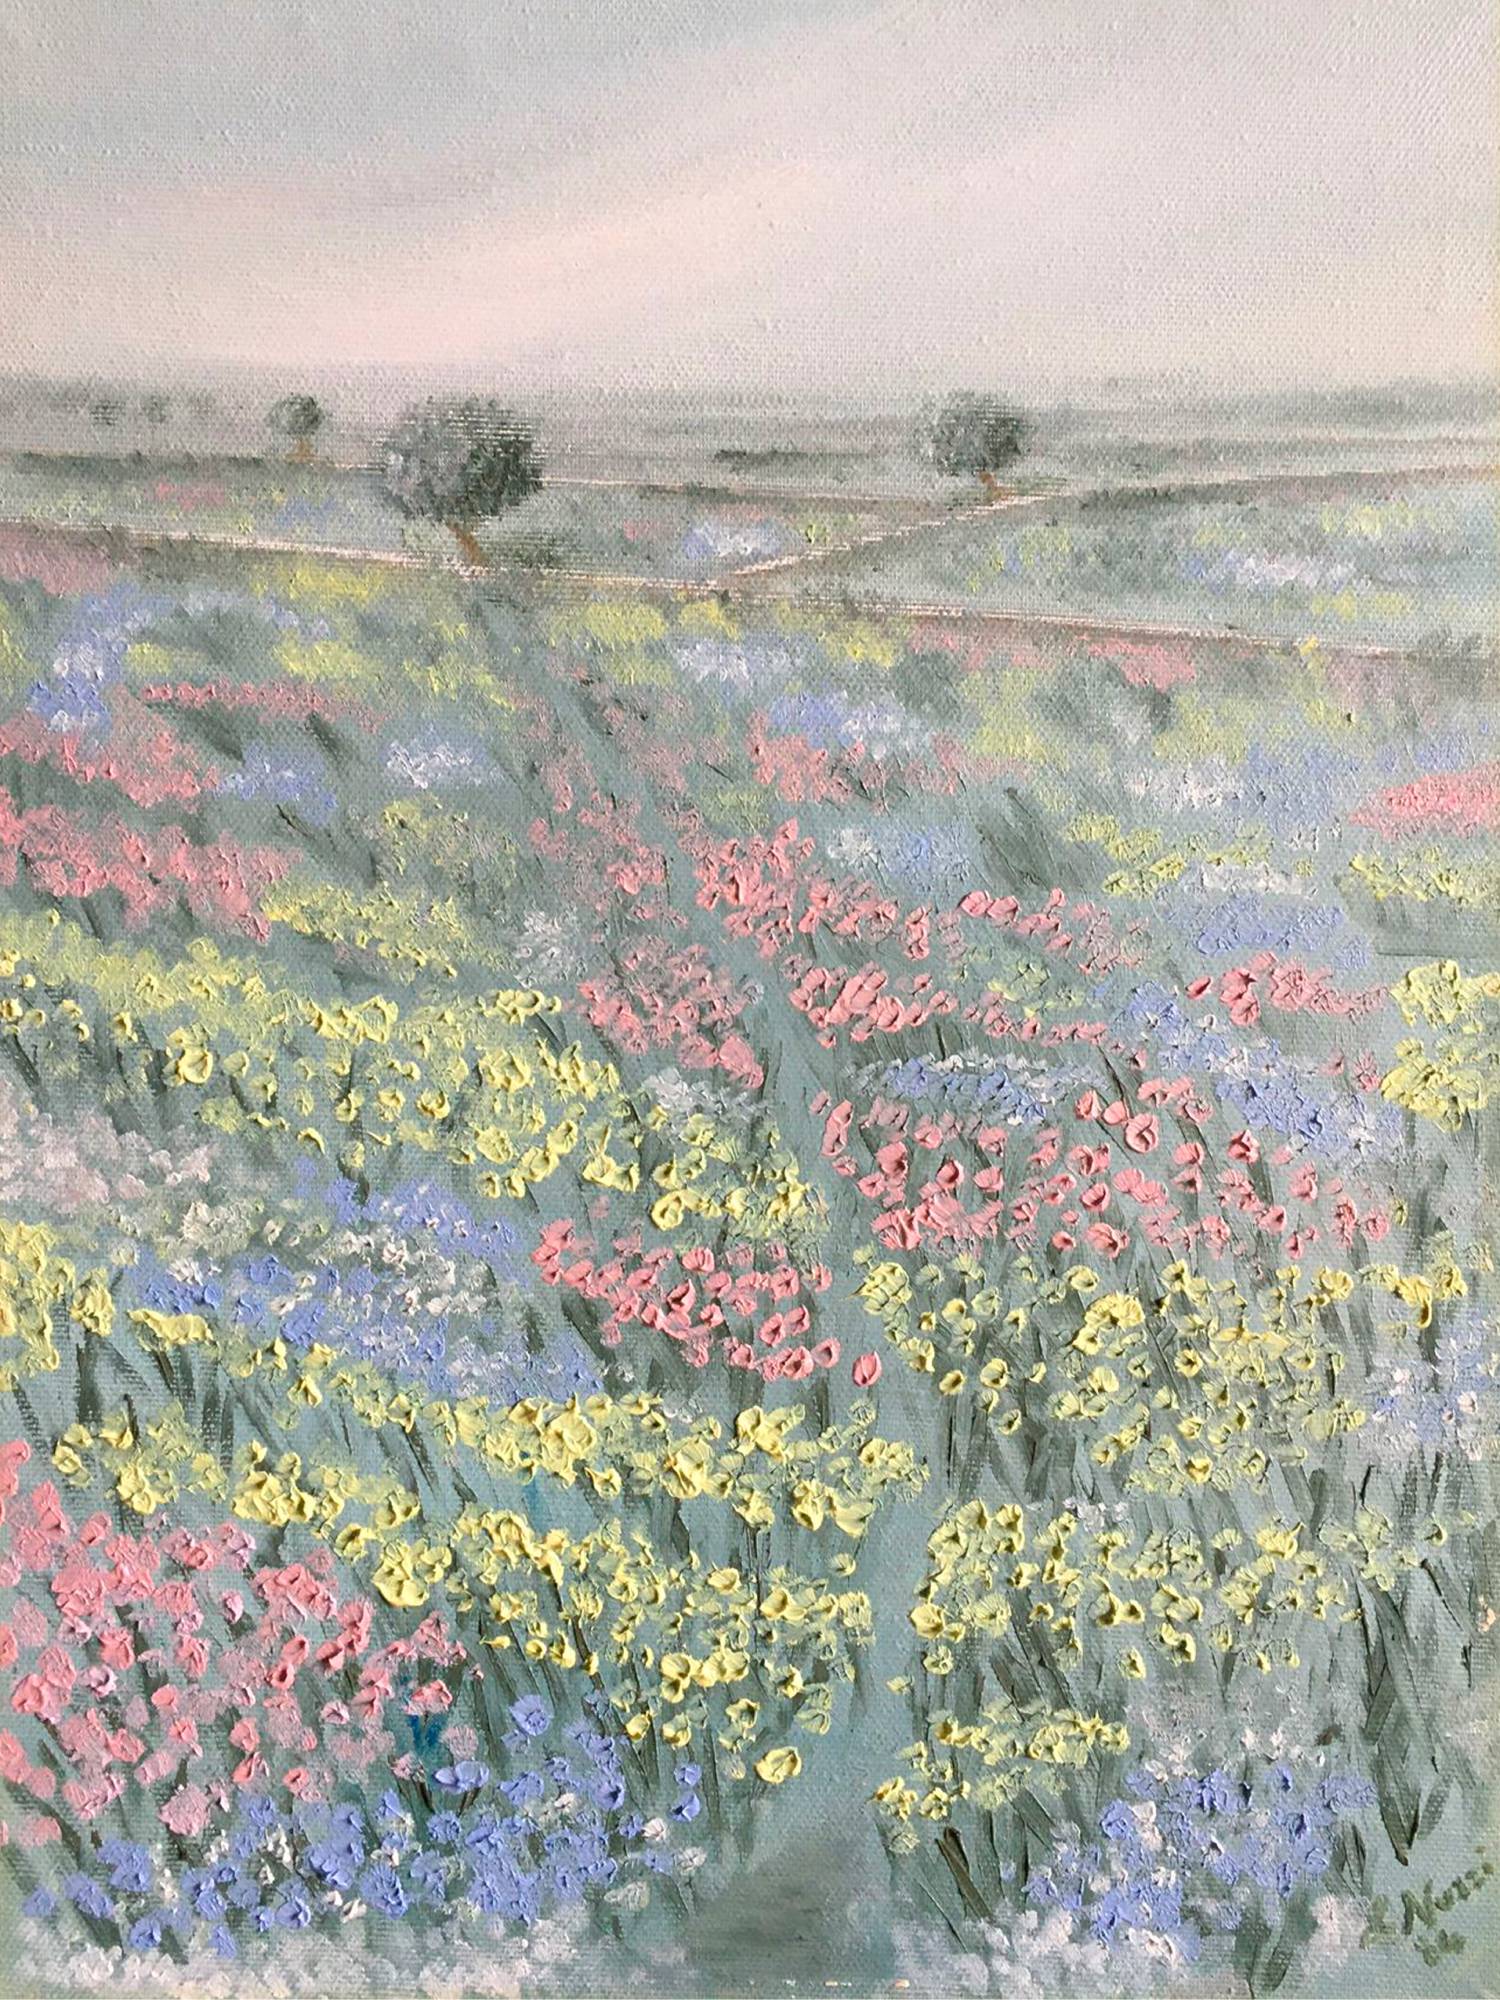 Vendita online opera di pittura ad olio dal titolo “Campagna fiorita 1” realizzata dall'artista contemporanea Linda Nuzzi